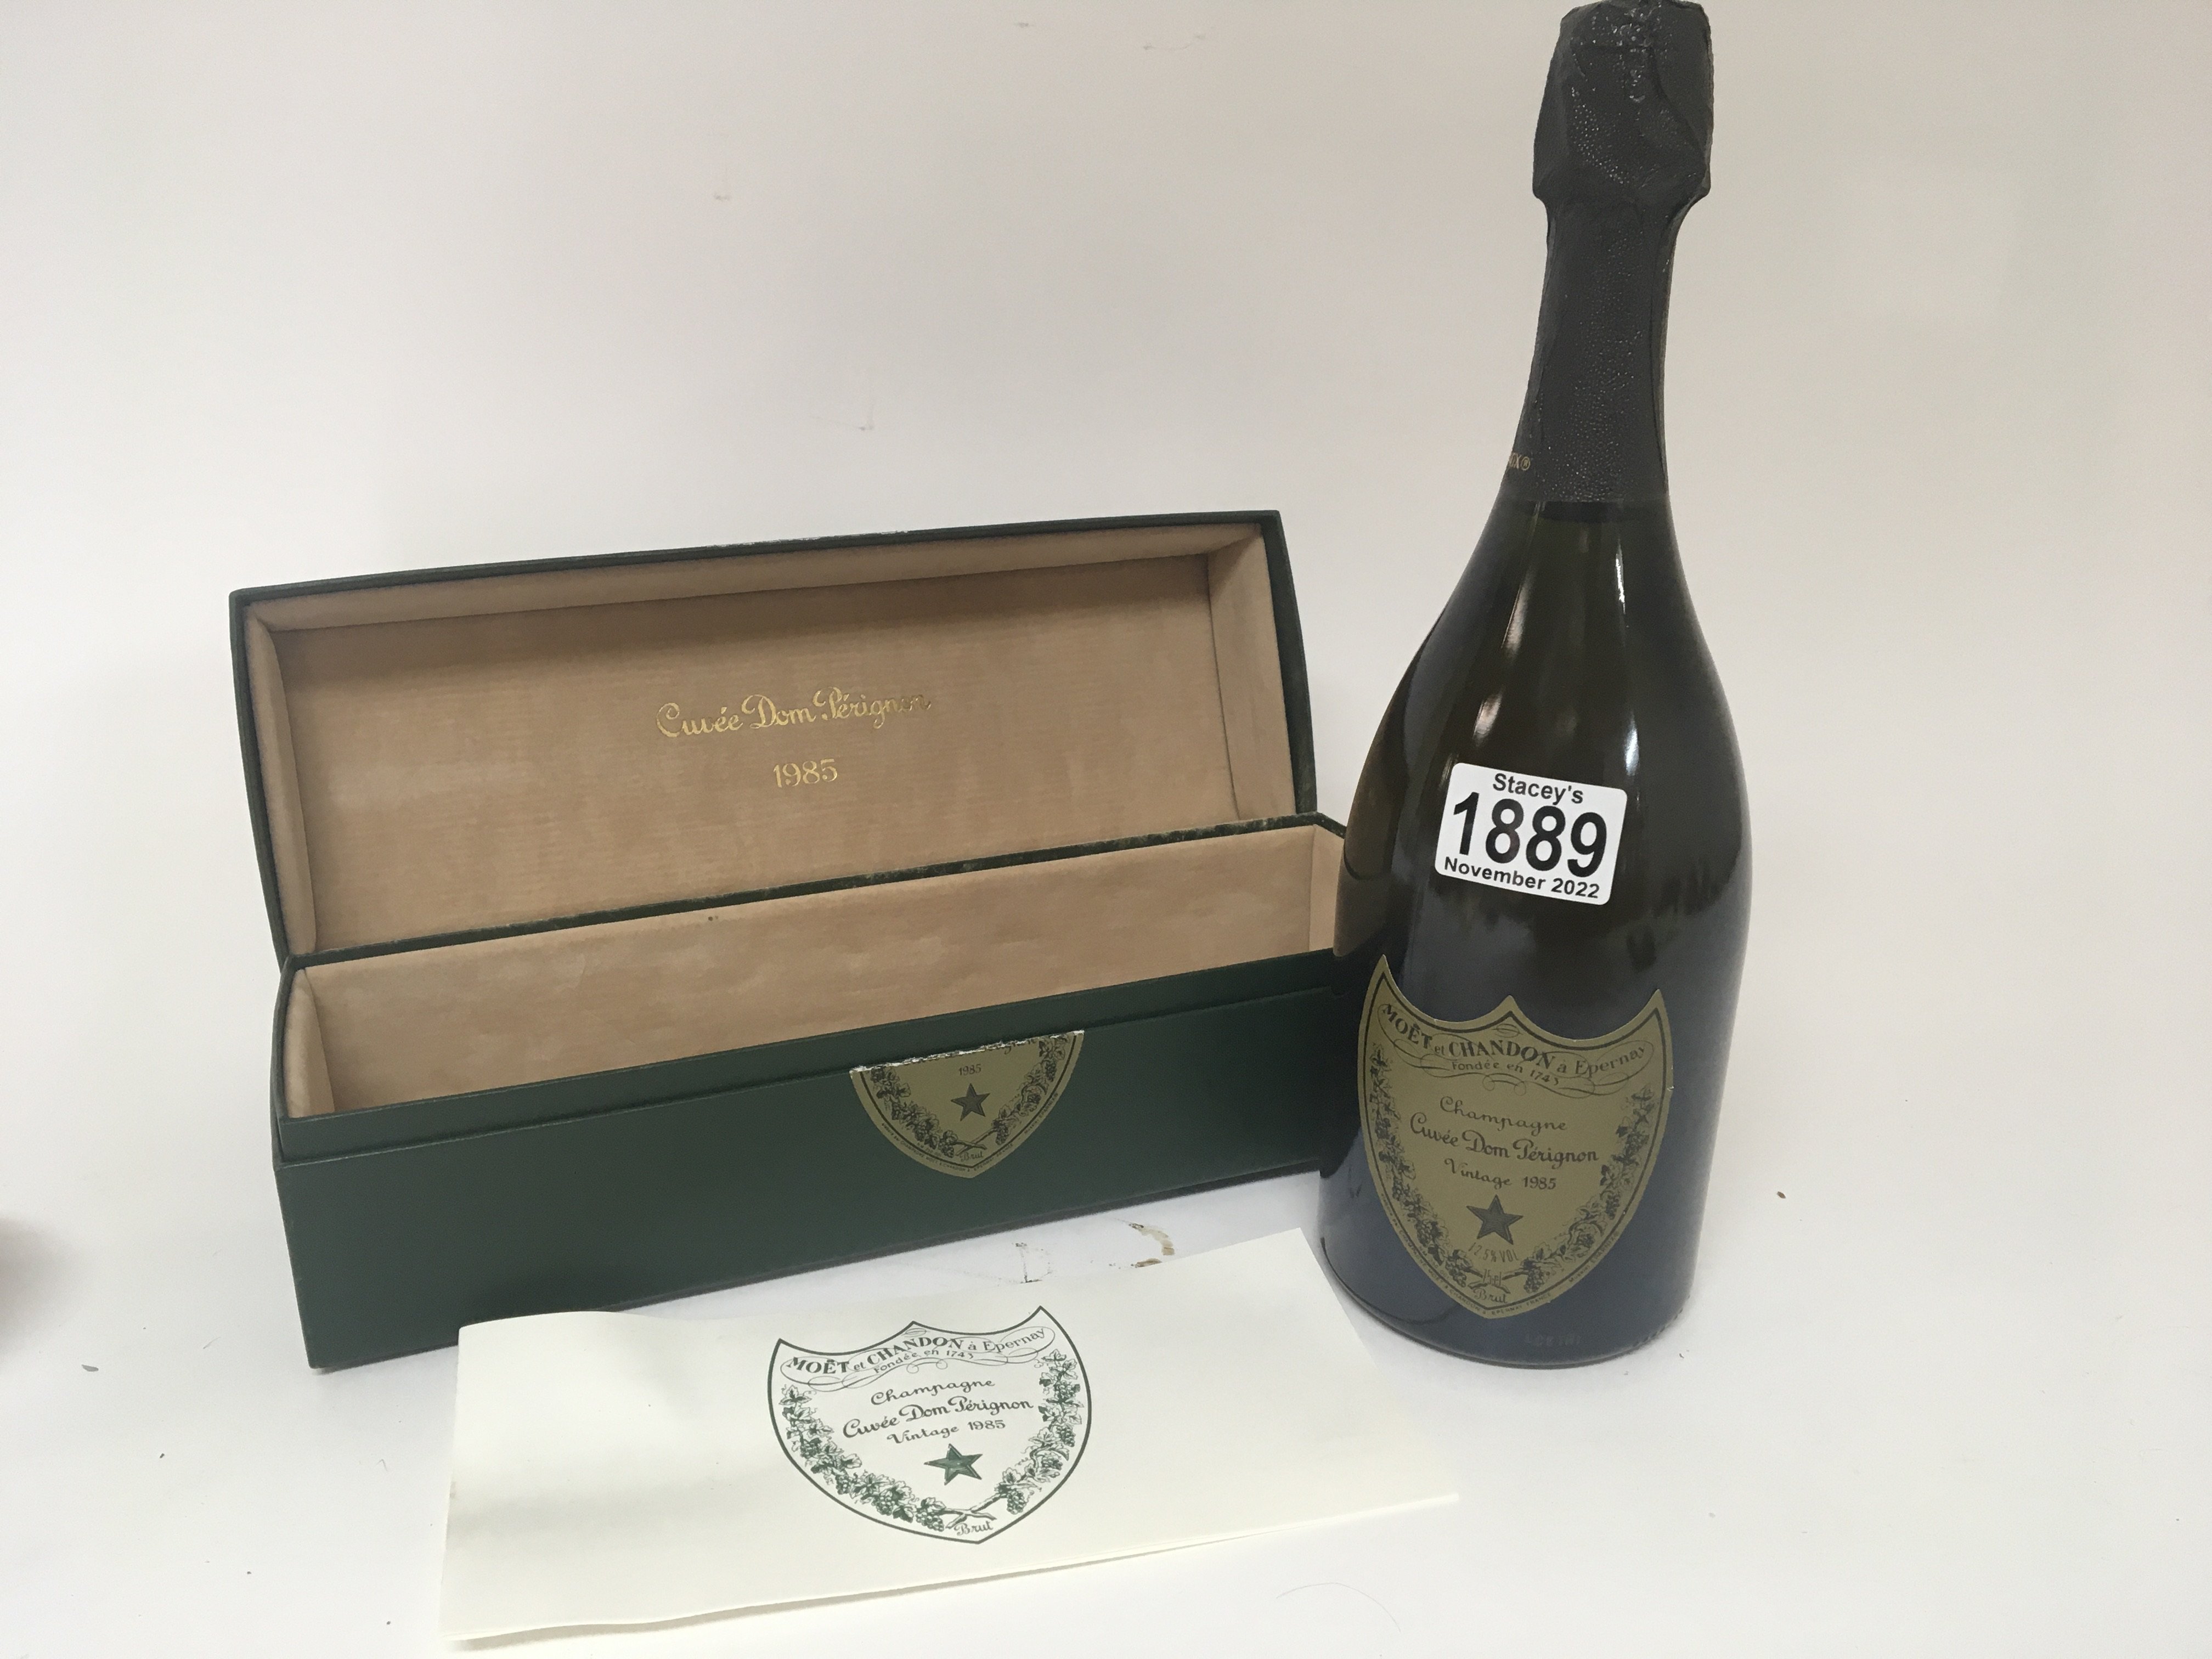 A bottle of Champagne Dom Perignon champagne vinta